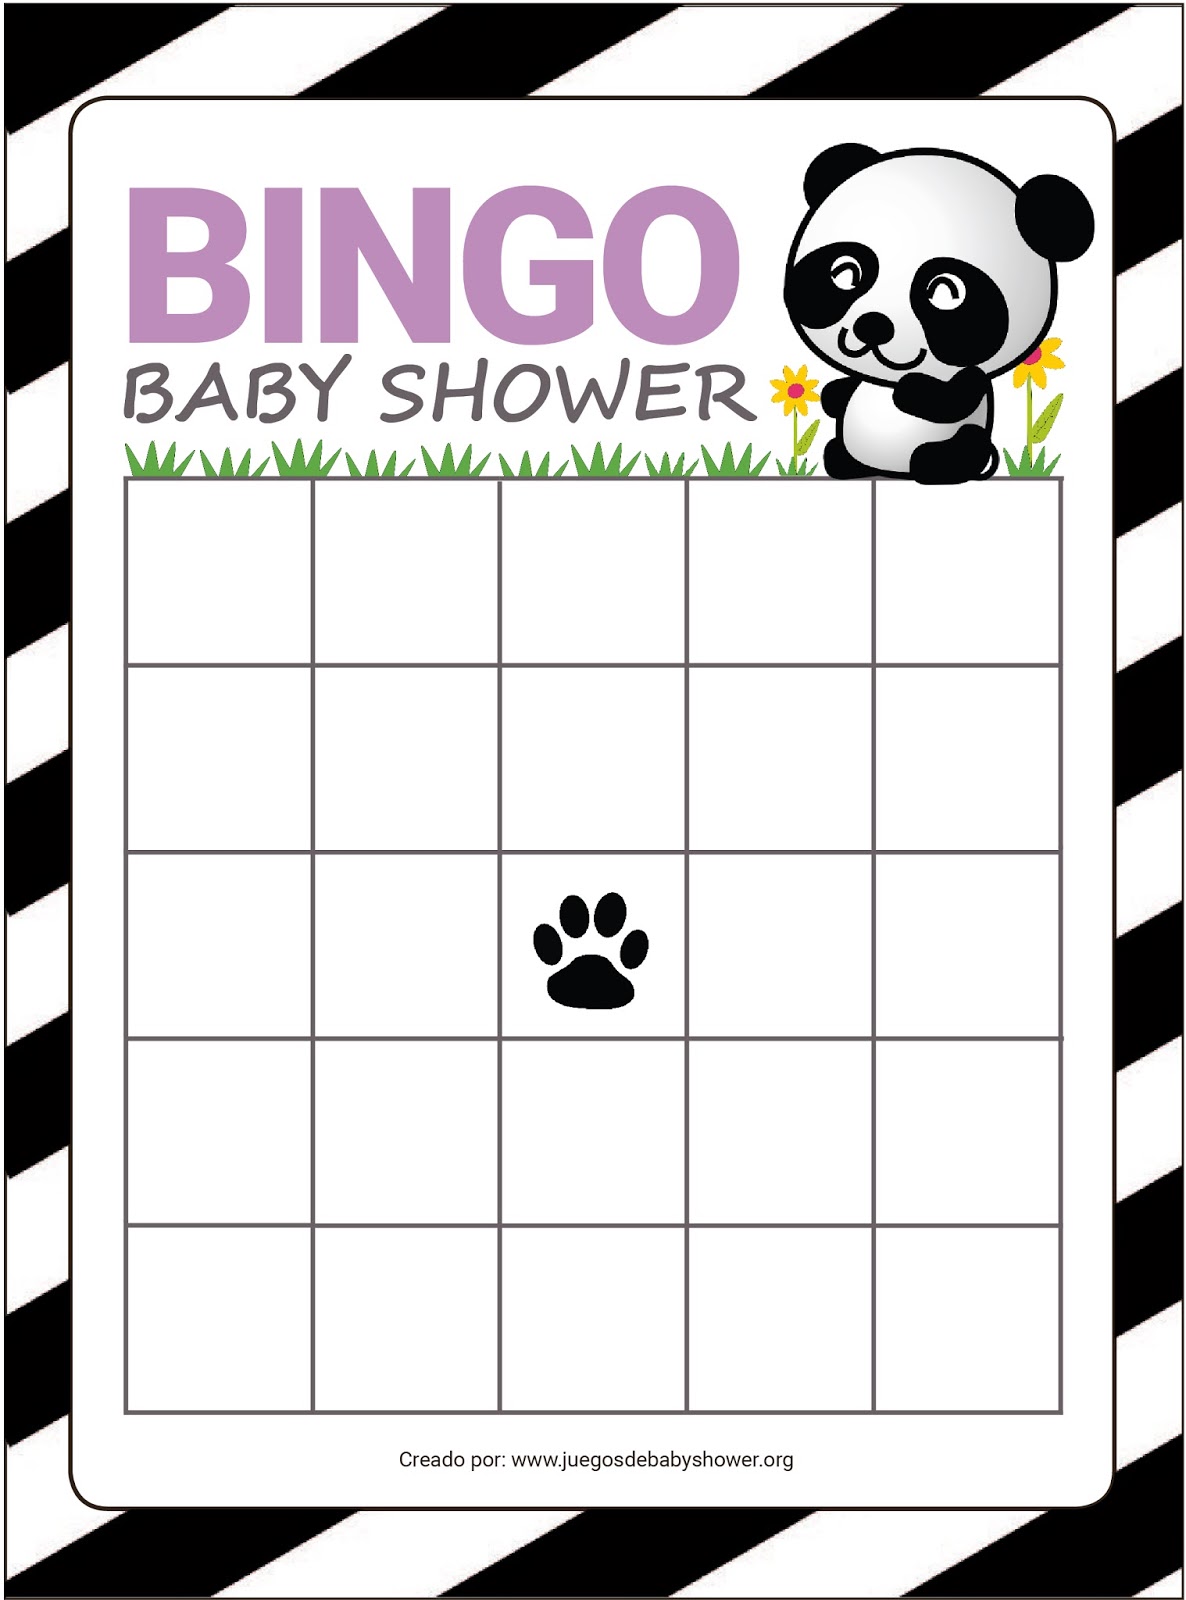 Bingo En Espanol Gratis Bingo para Baby Shower │ Juegos Imprimibles Gratis | Juegos de Baby Shower